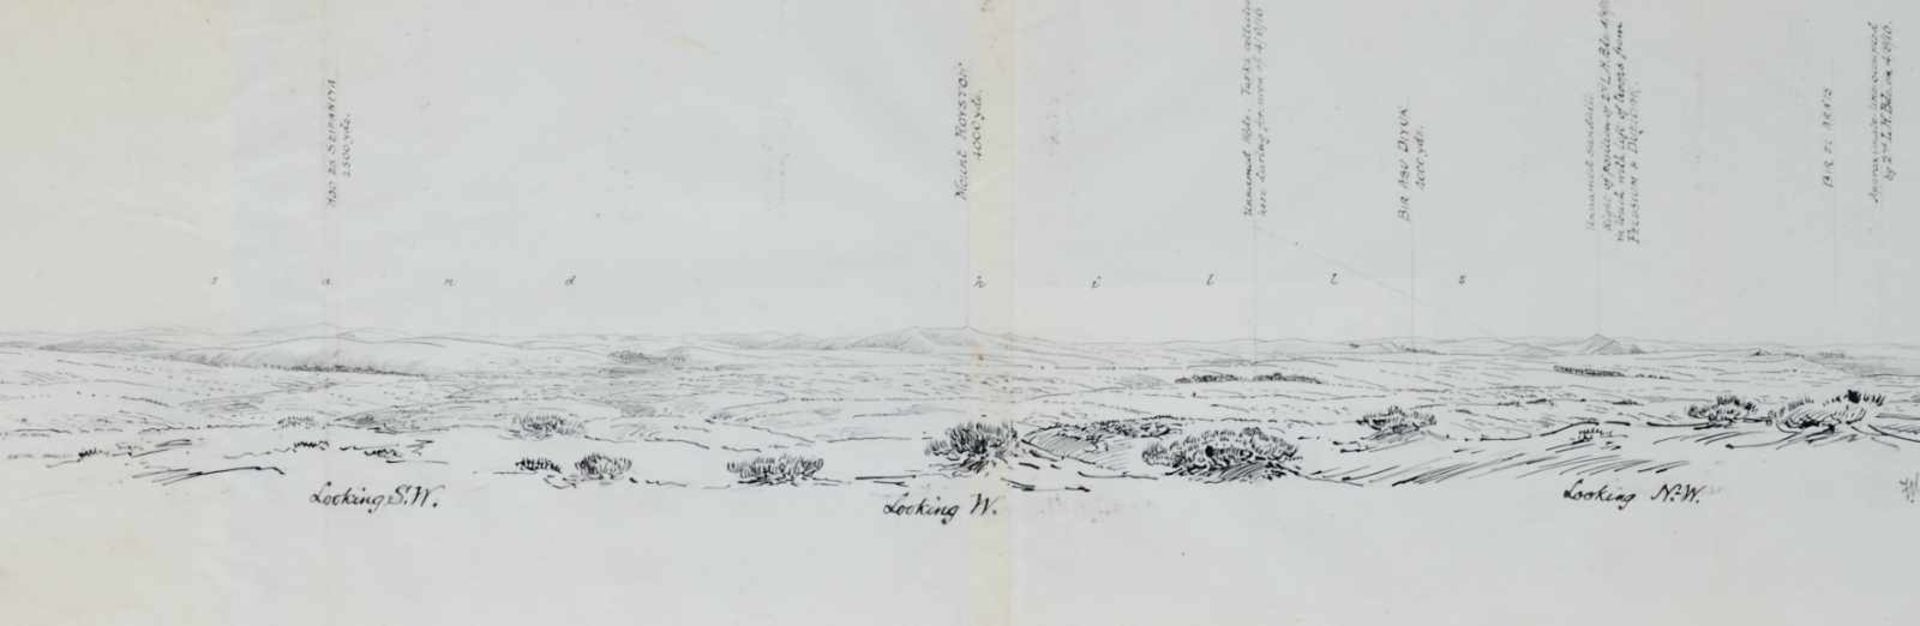 Romani-Schlacht Panorama - "View from Wellington Ridge", mit detaillierterBeschriftung. - Bild 2 aus 7